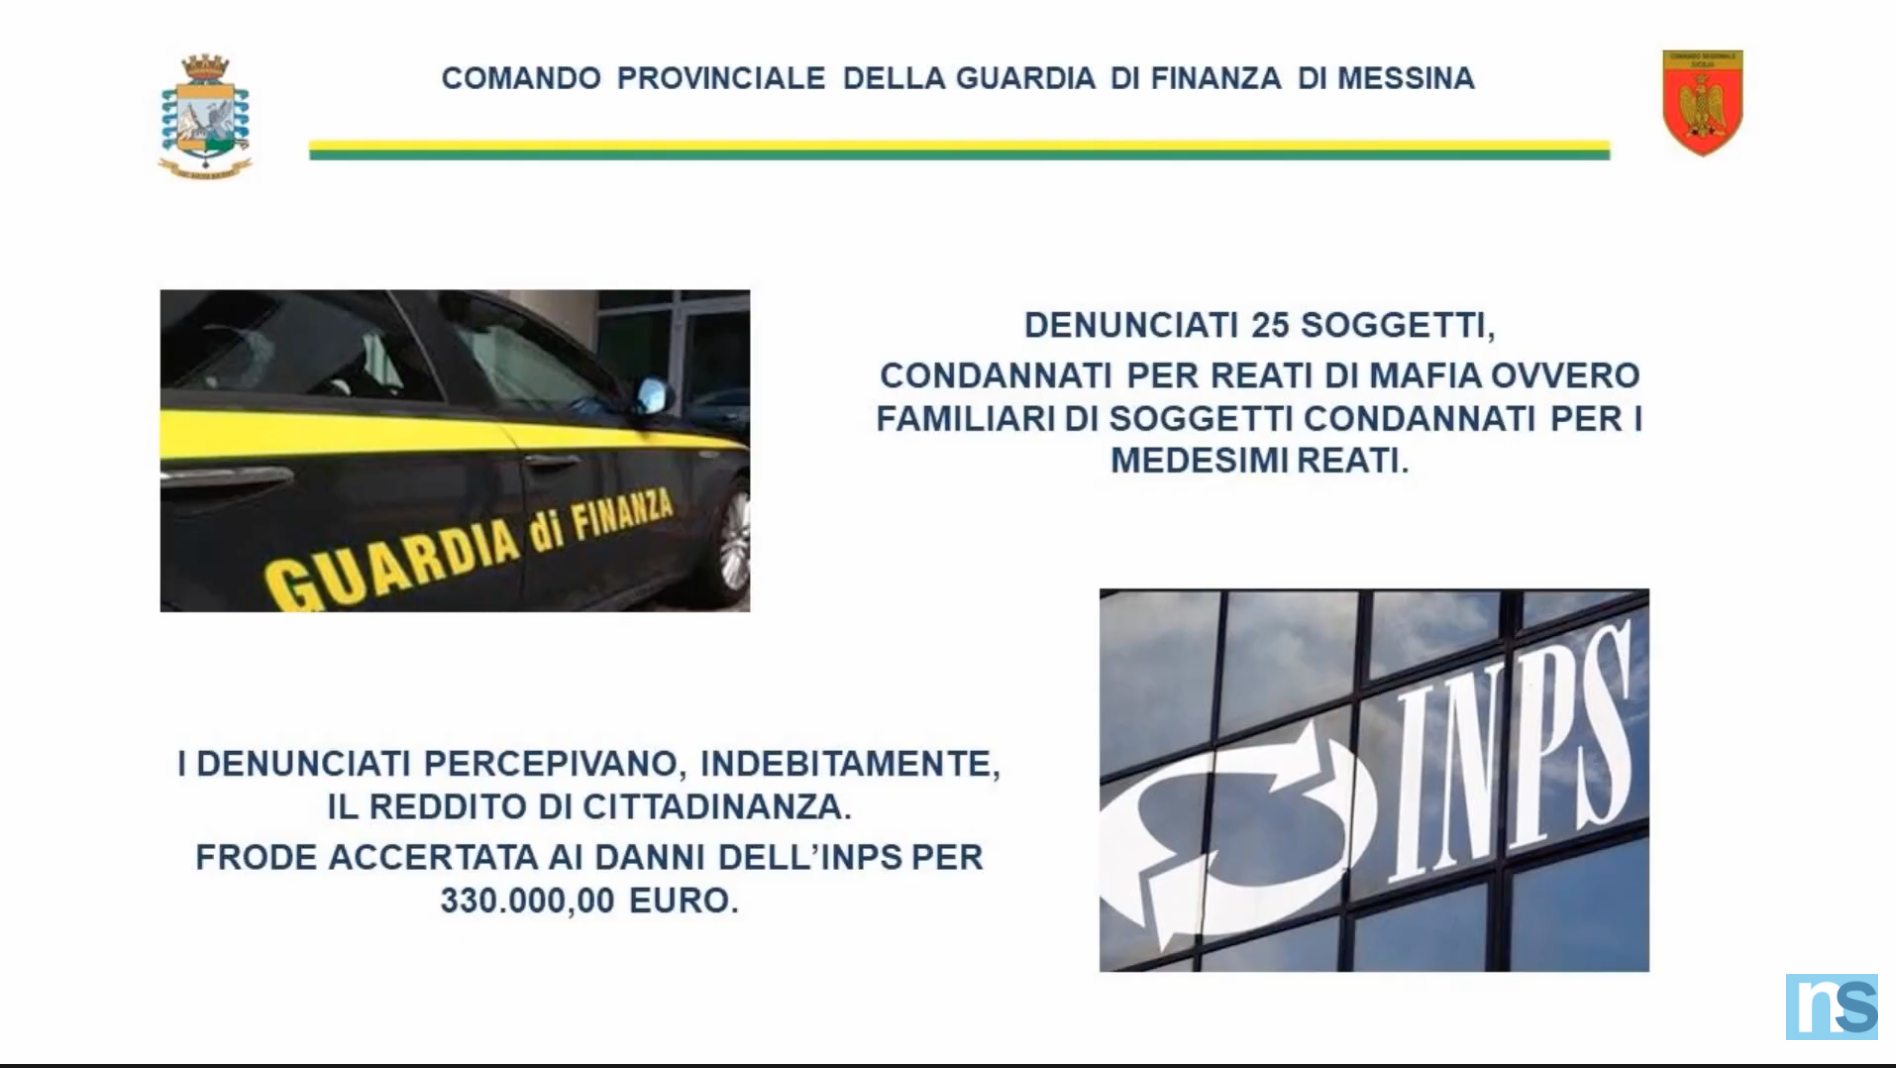 Condannati per mafia ma con il Reddito di Cittadinanza: 25 soggetti denunciati – IL VIDEO